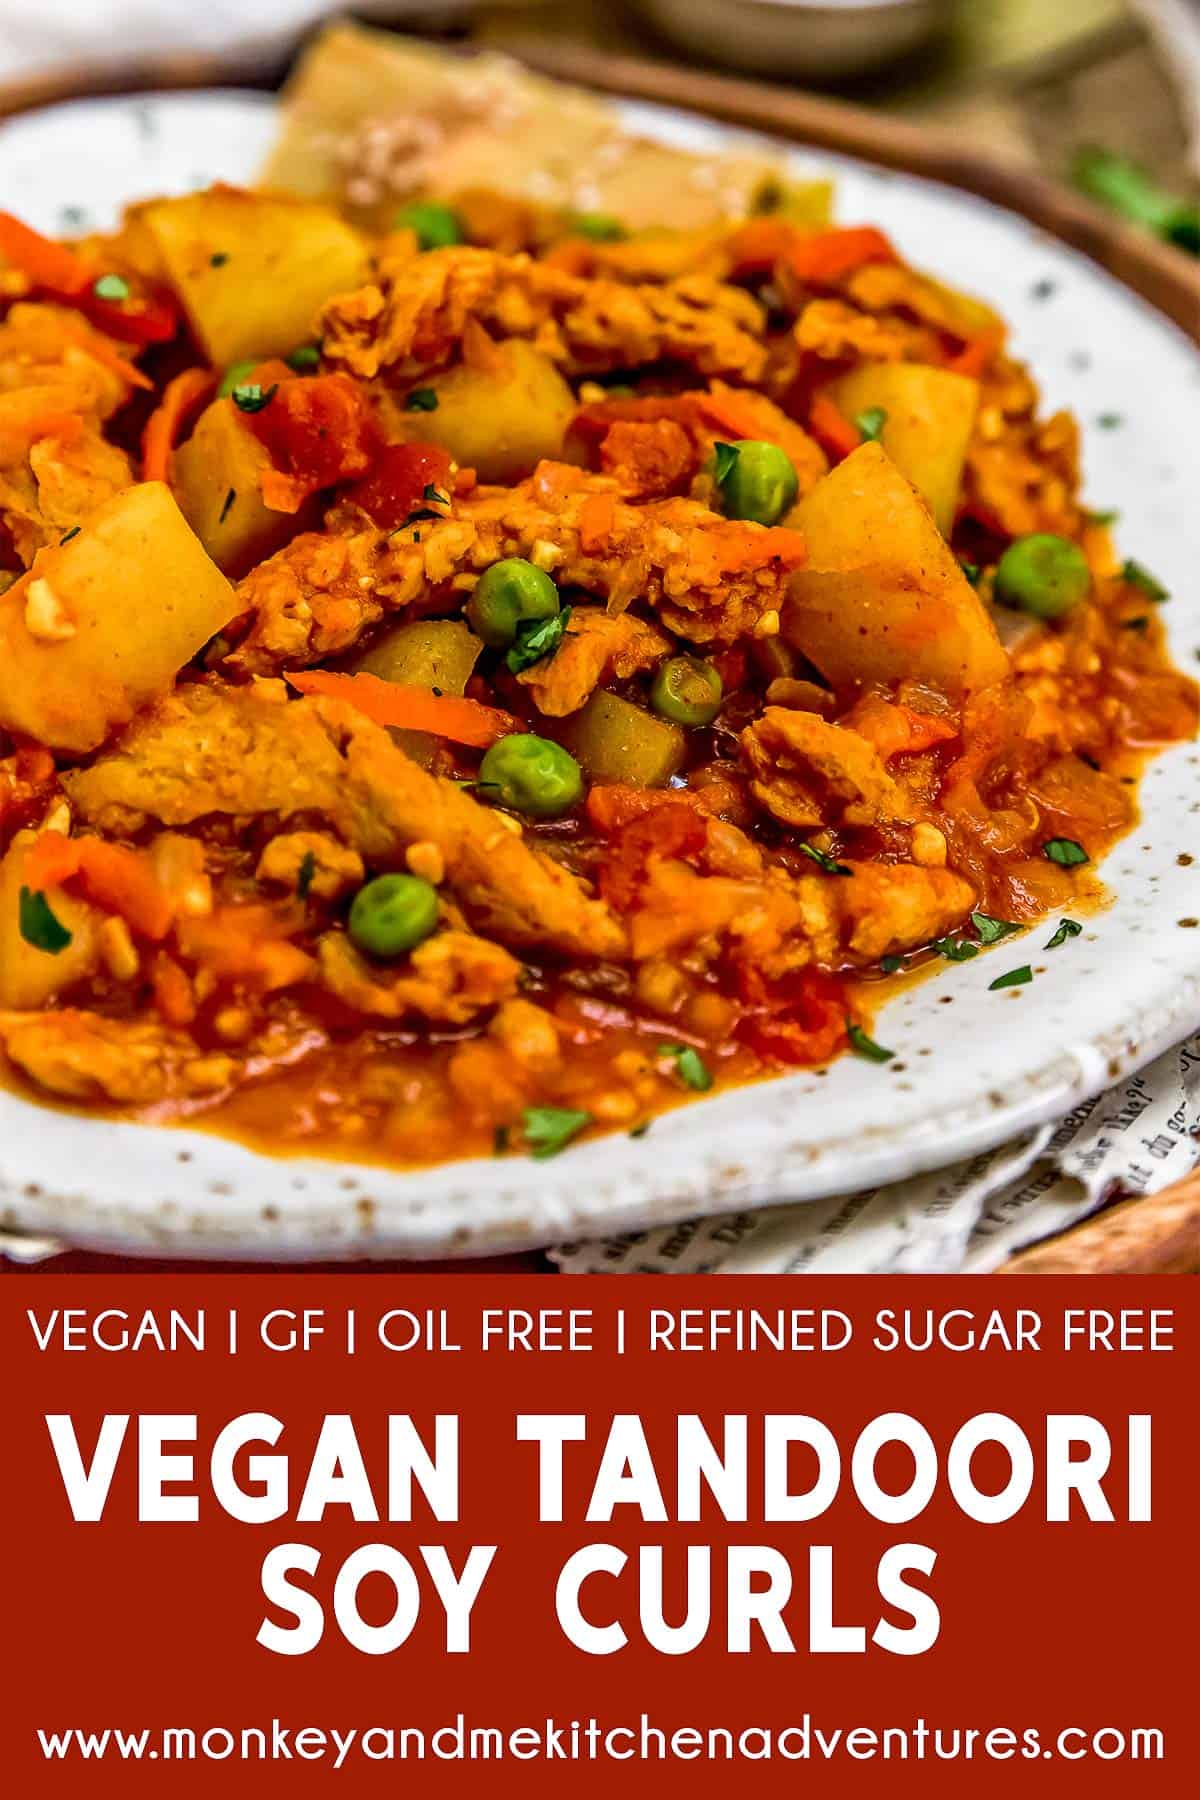 Vegan Tandoori Soy Curls with text description